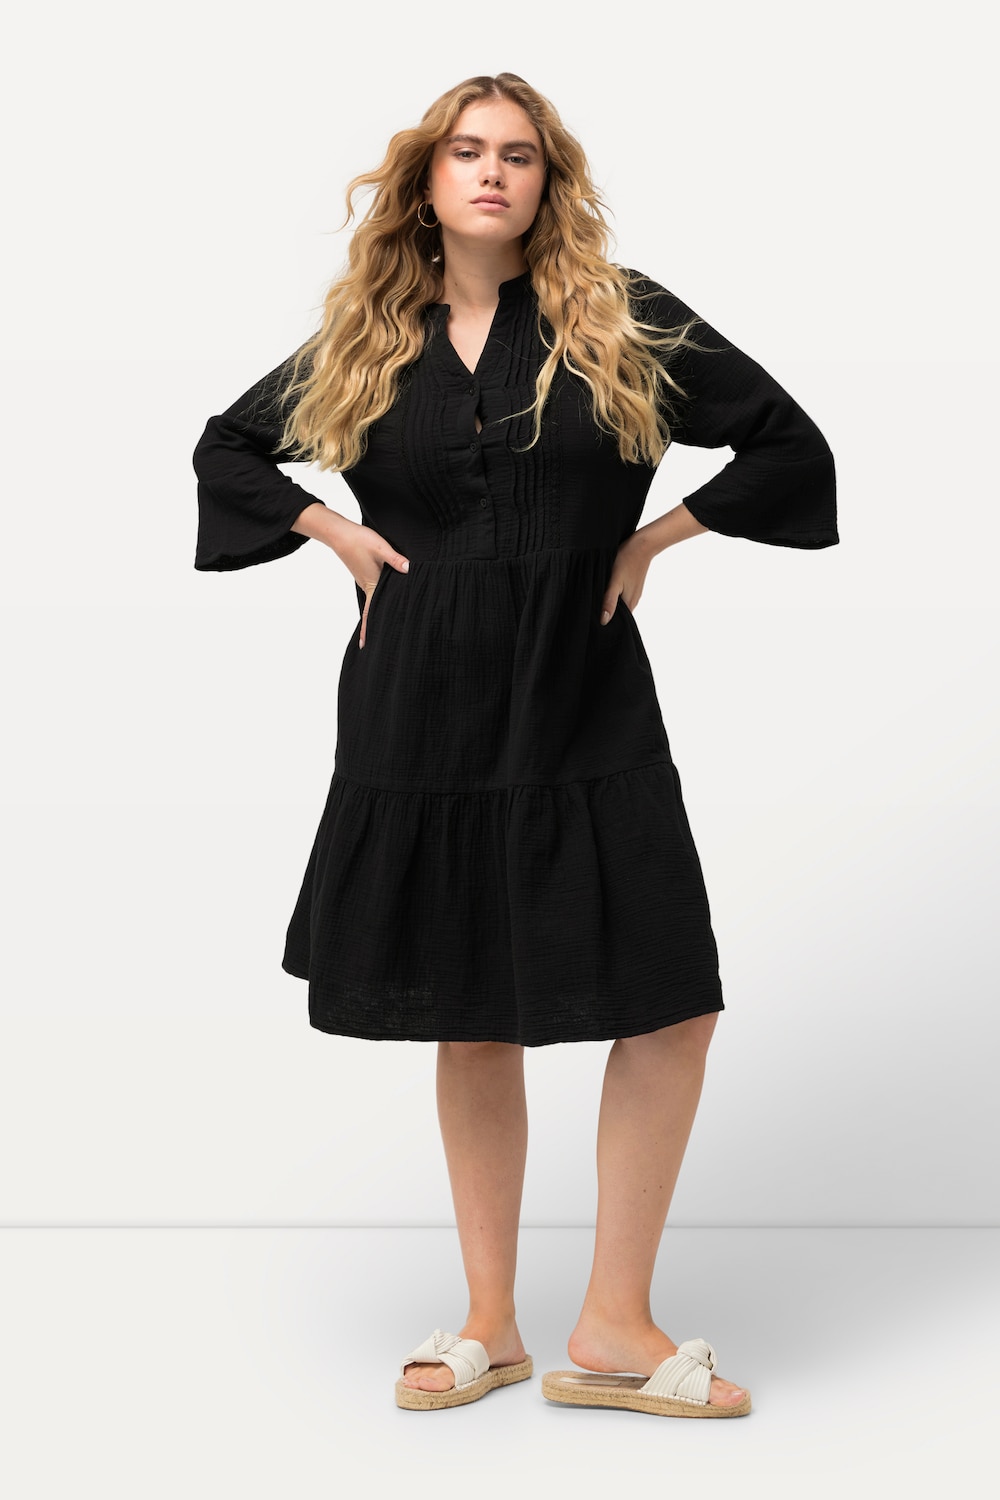 Große Größen Musselin-Kleid, Damen, schwarz, Größe: 62/64, Baumwolle, Ulla Popken von Ulla Popken